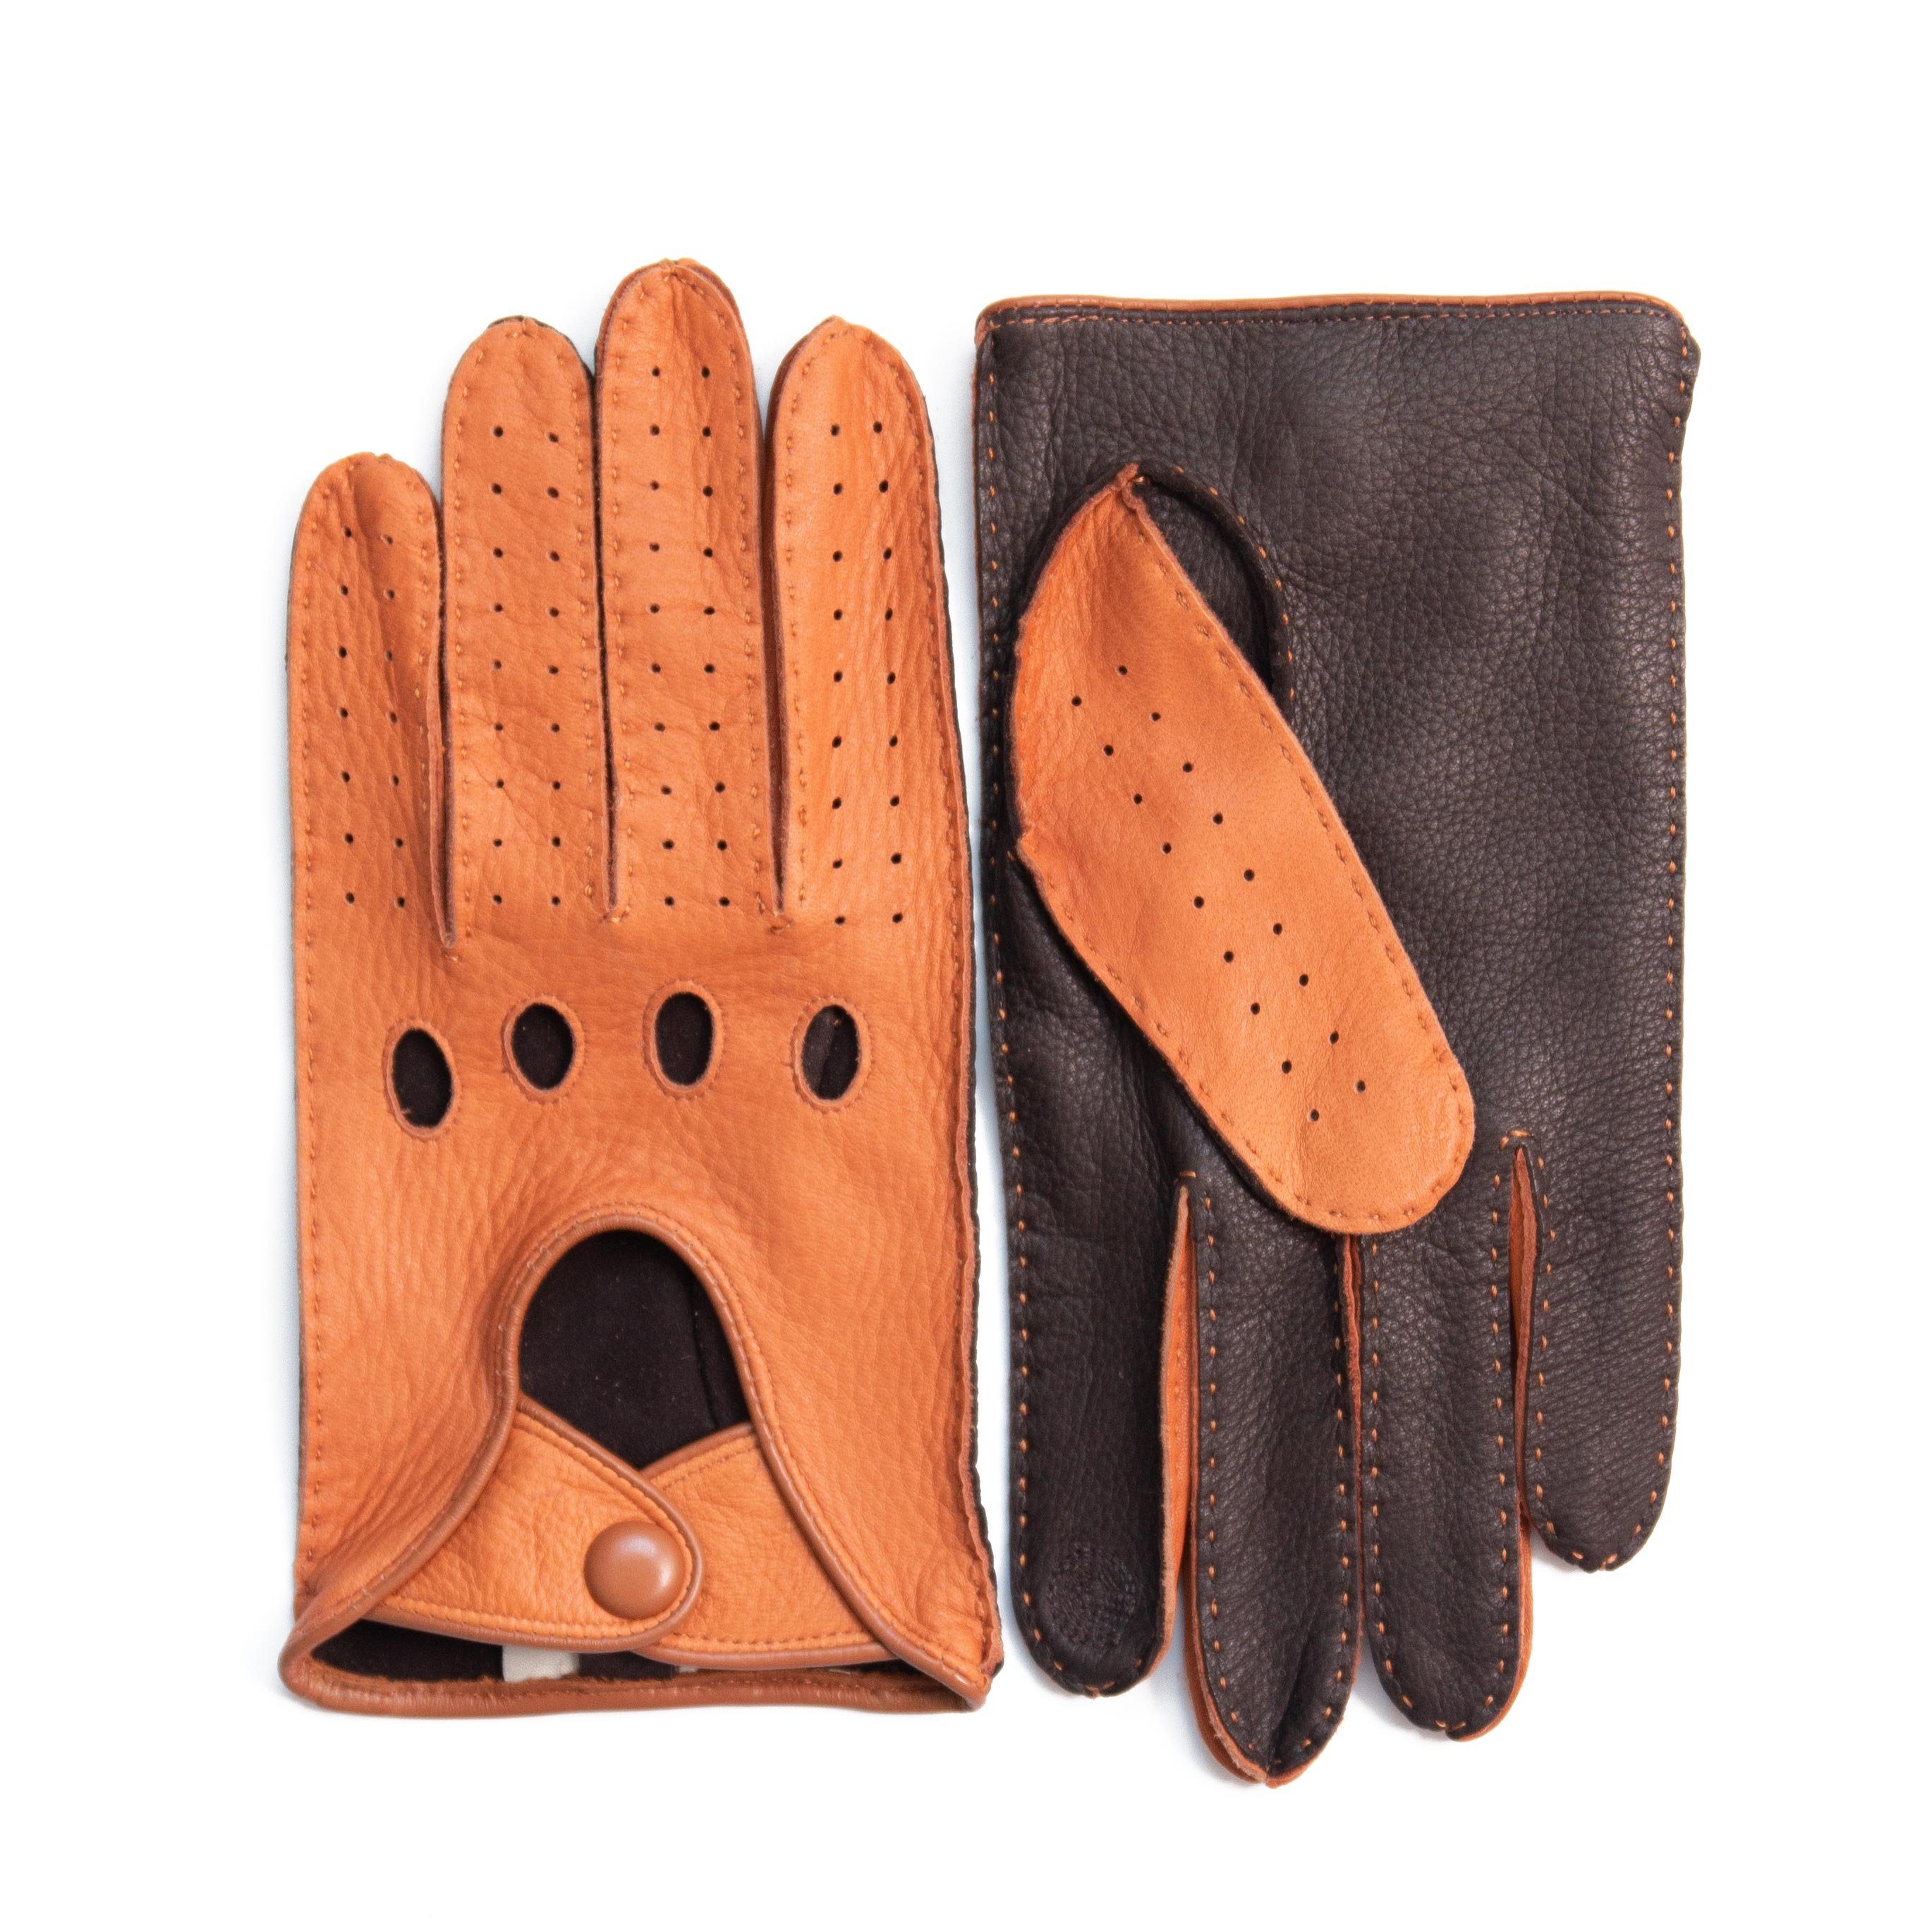 Hand Gewand by Weikert Lederhandschuhe CARLA - Hirschleder Auto-Handschuhe  für Damen, handgenäht mit Touchscreen Funktion, ungefüttert